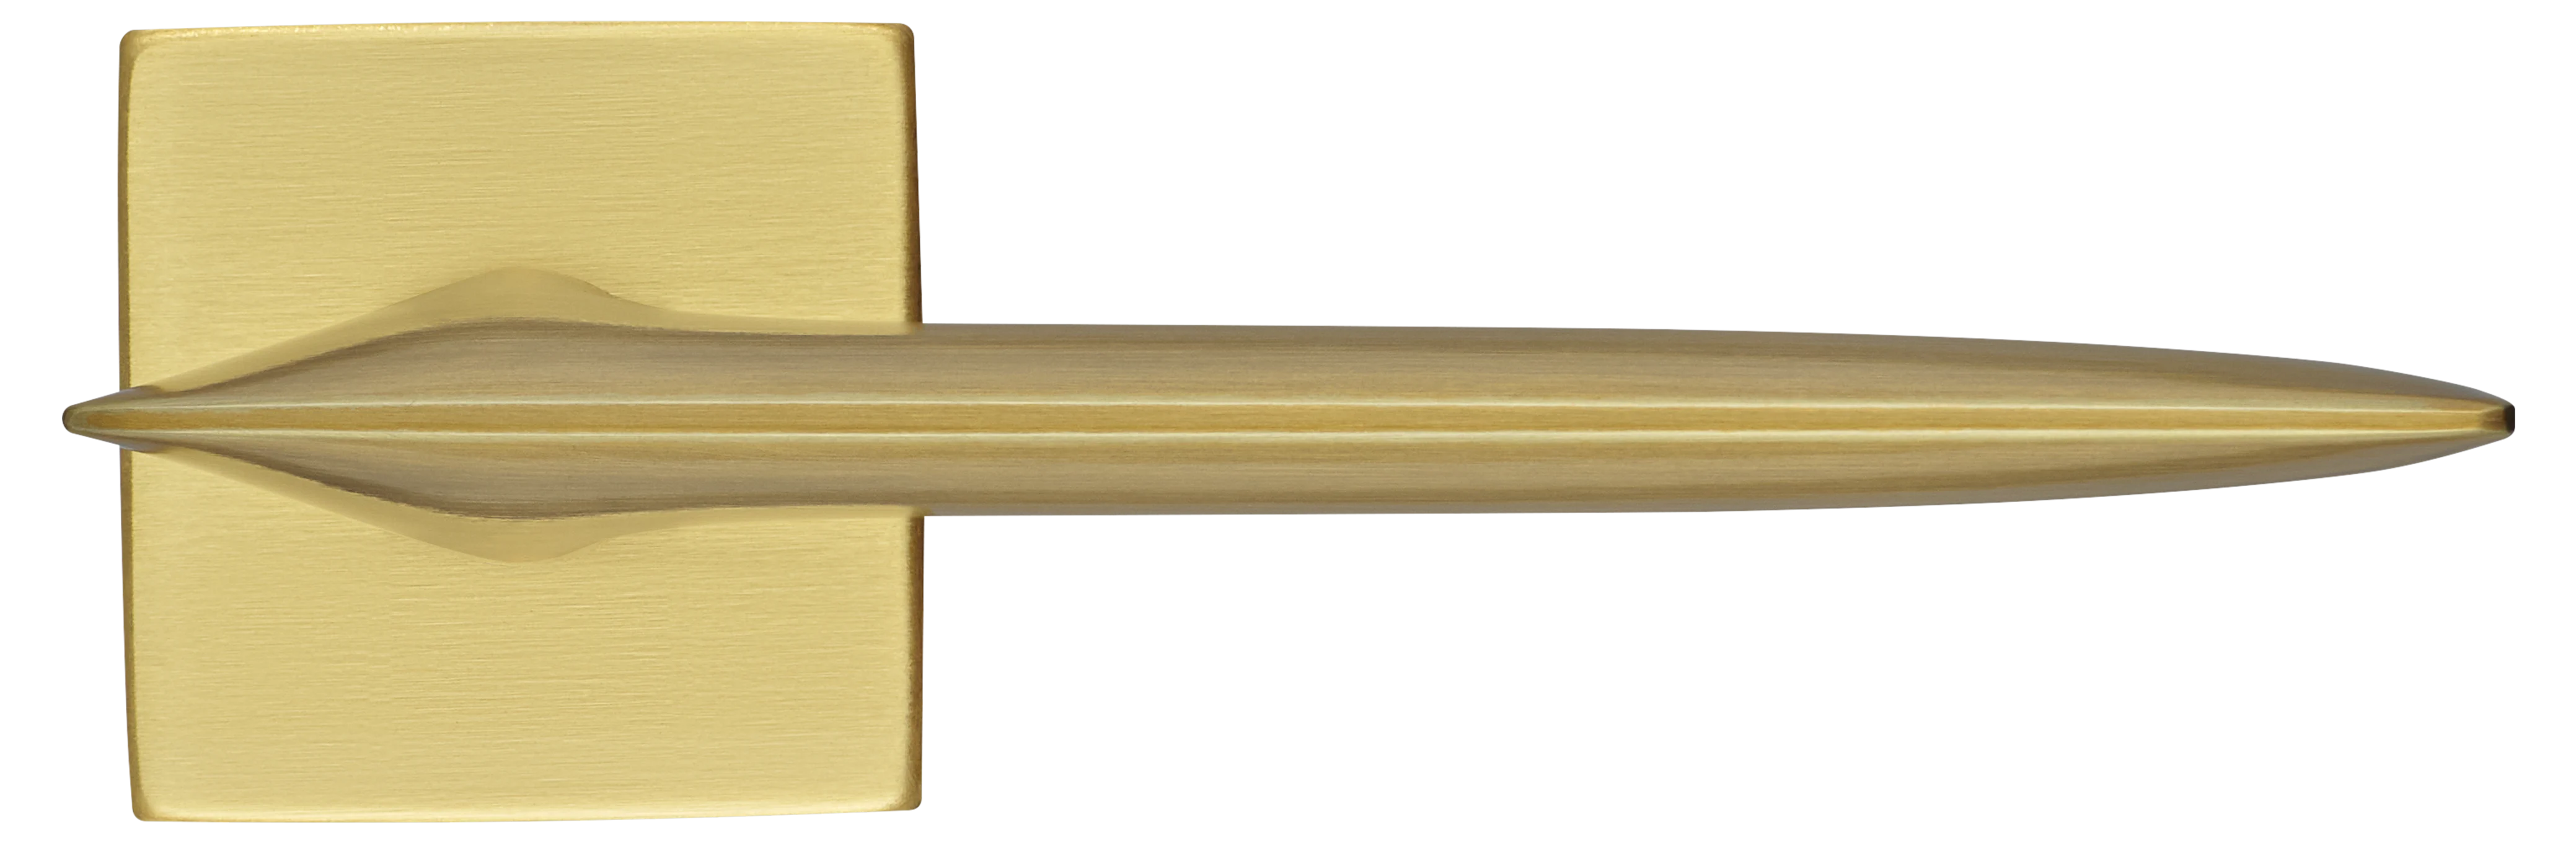 GALACTIC S5 OSA, ручка дверная, цвет -  матовое золото фото купить в Саратове